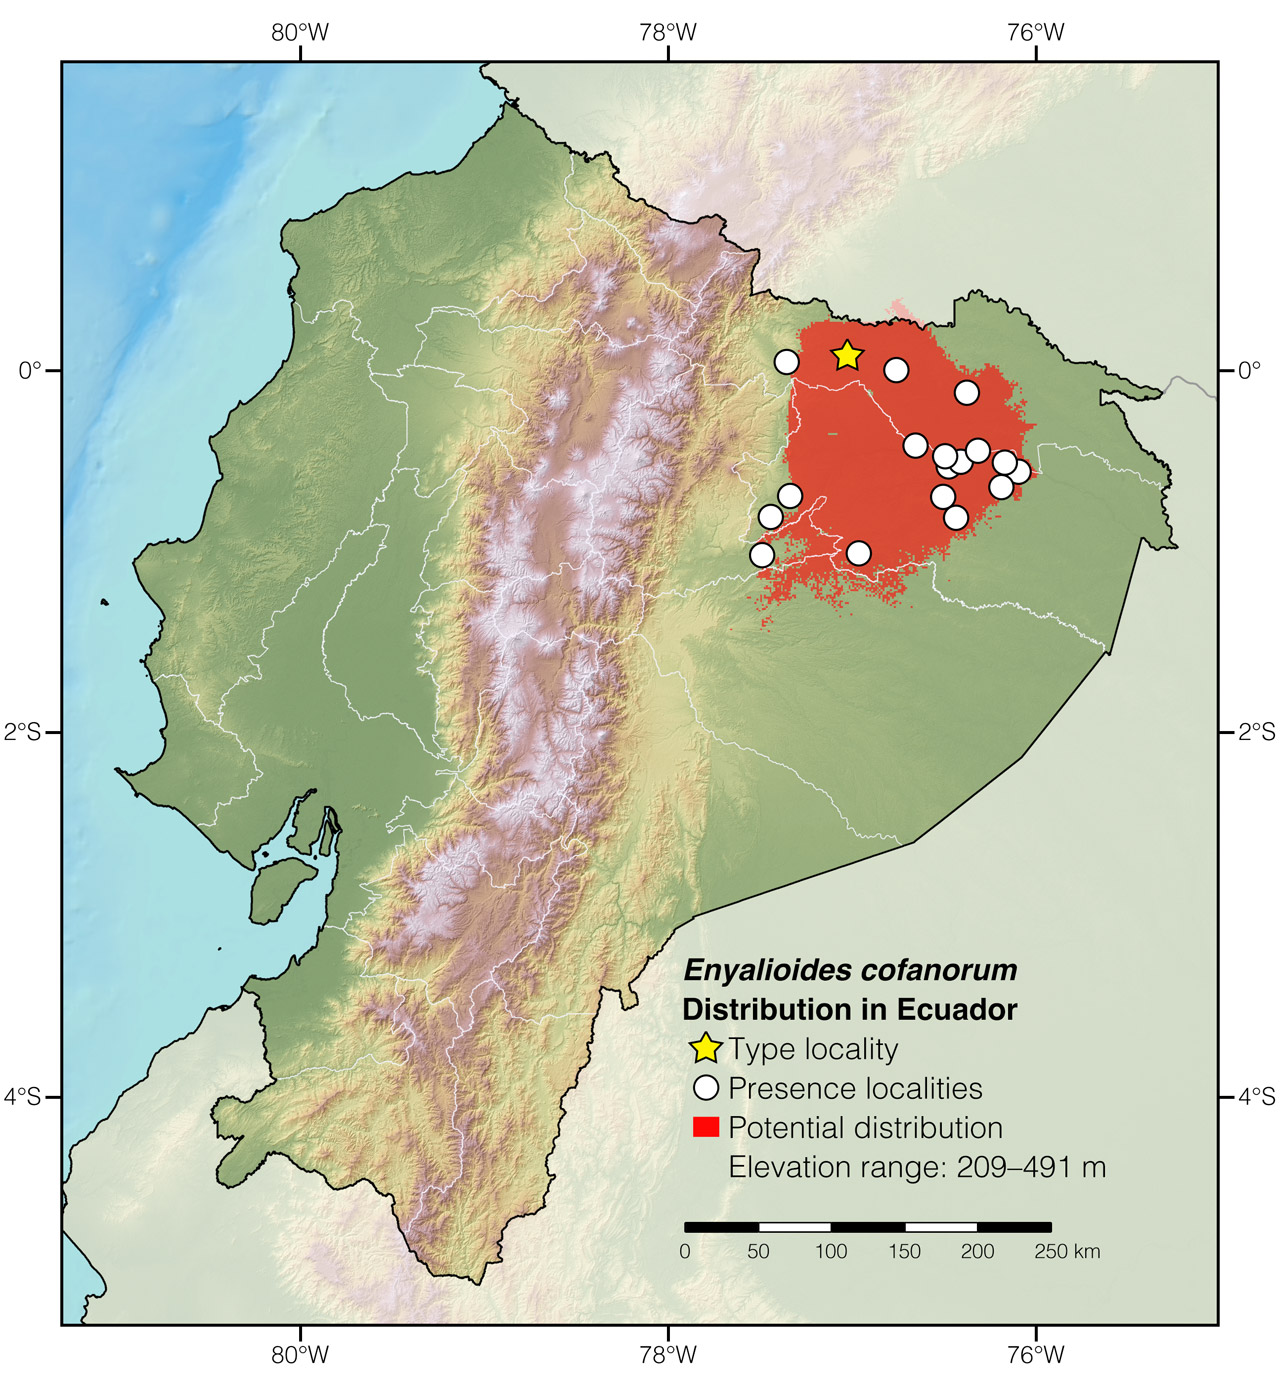 Distribution of Enyalioides cofanorum in Ecuador